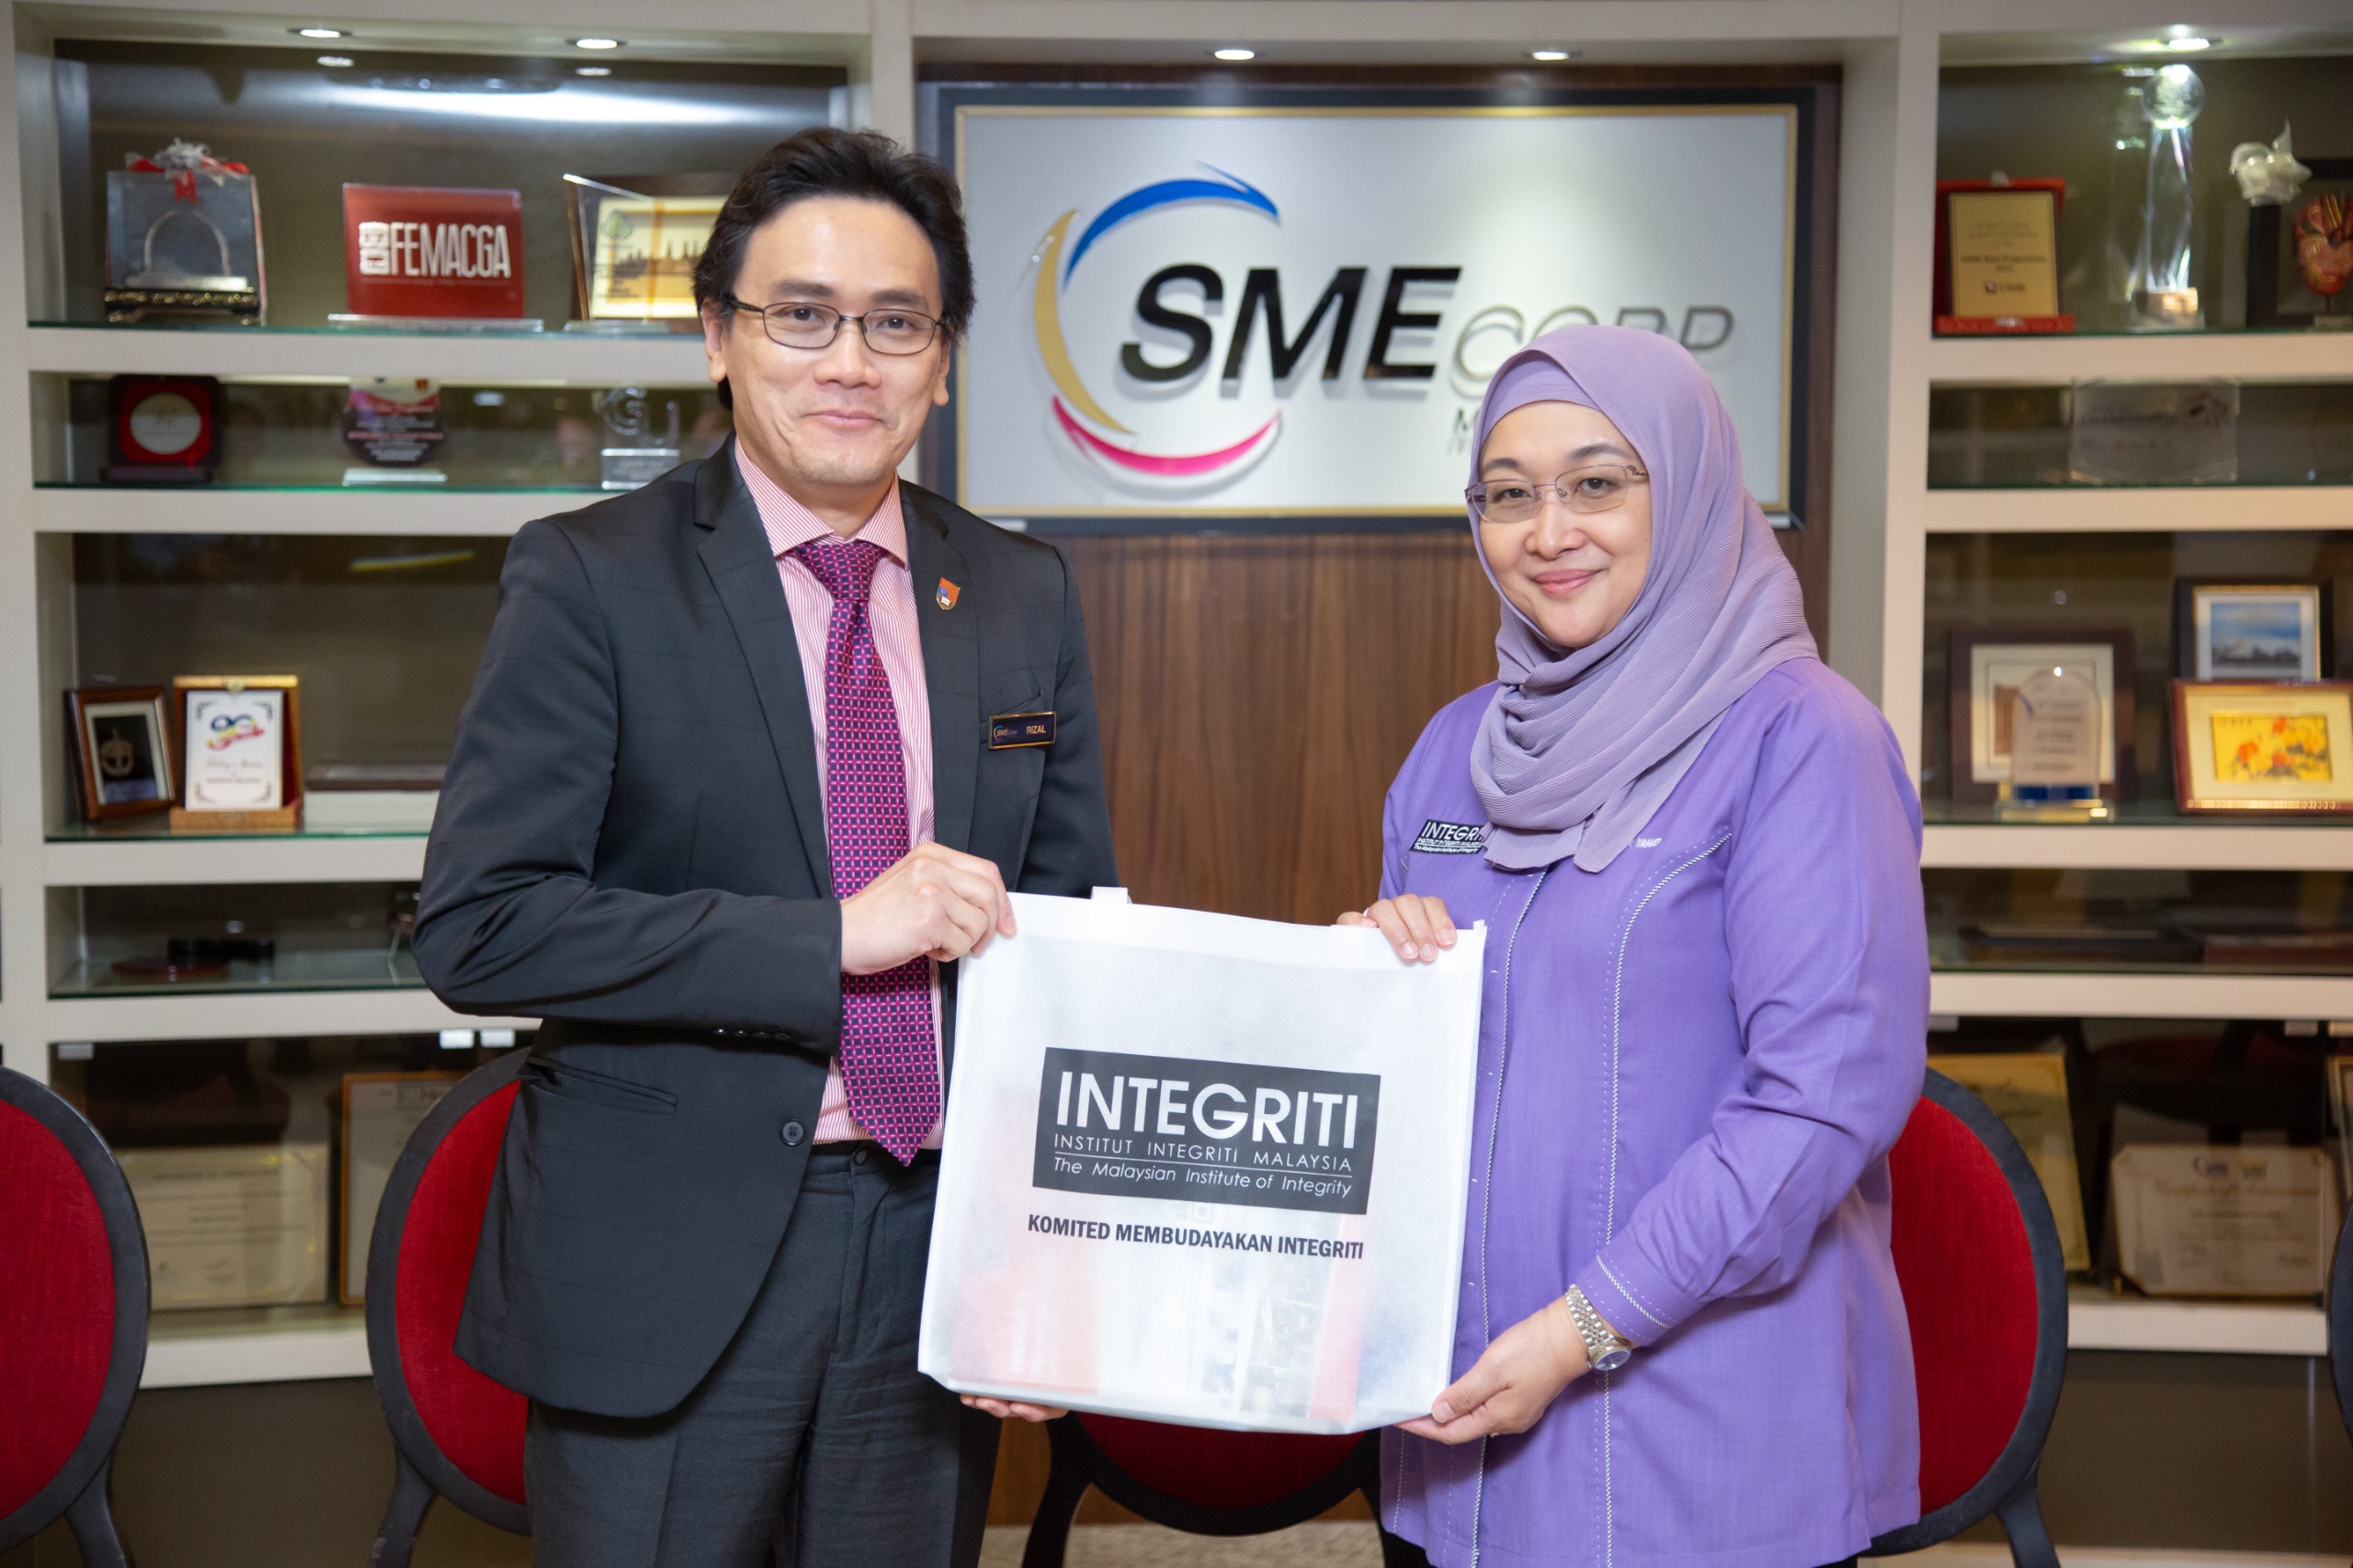 Kunjungan hormat dan lawatan kerja ke Perbadanan Perusahaan Kecil & Sederhana Malaysia (SME Corp)